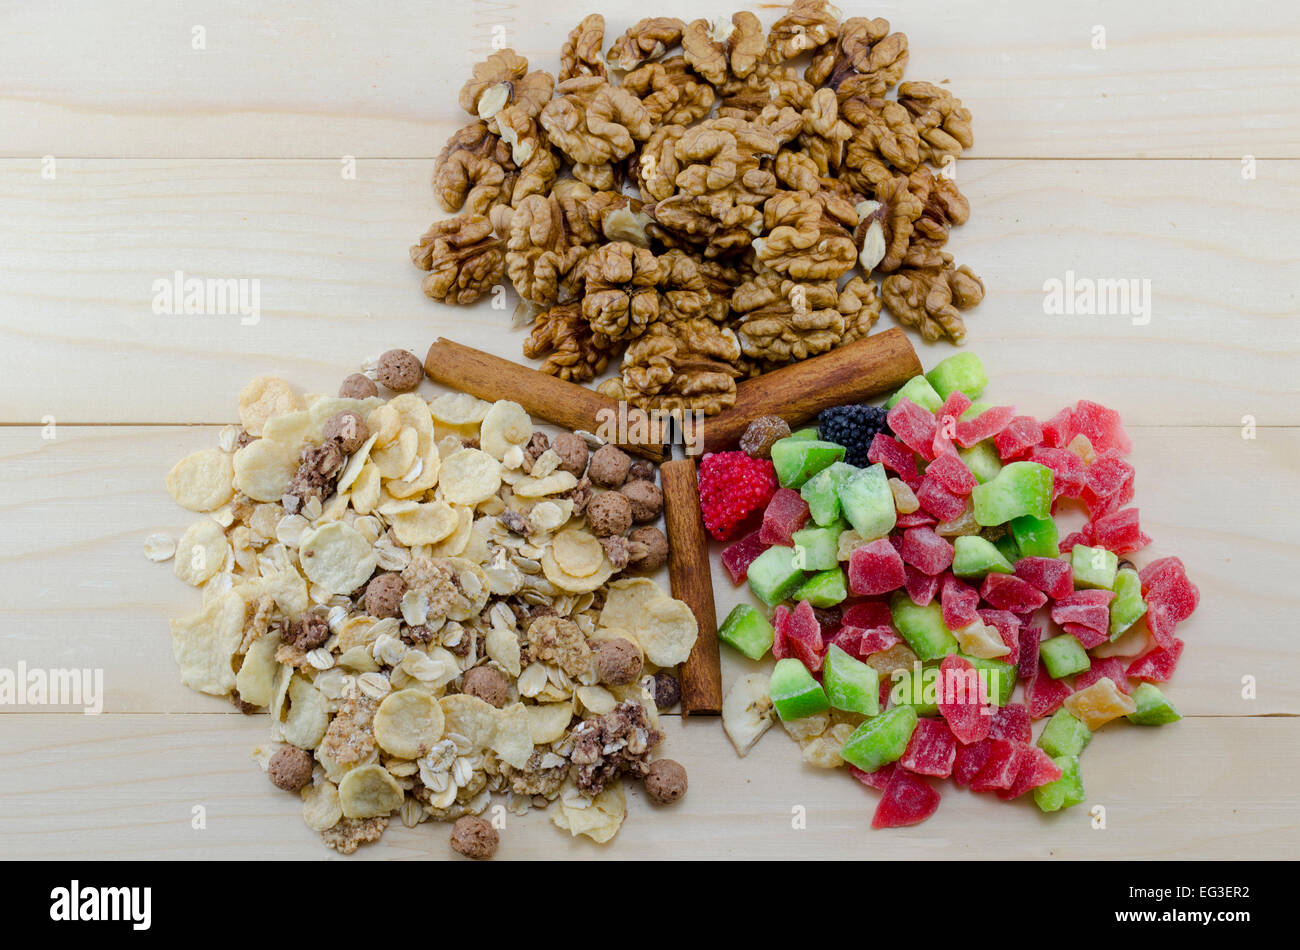 Muesli, noix et fruits secs et des bâtons de cannelle sur une table en bois Banque D'Images